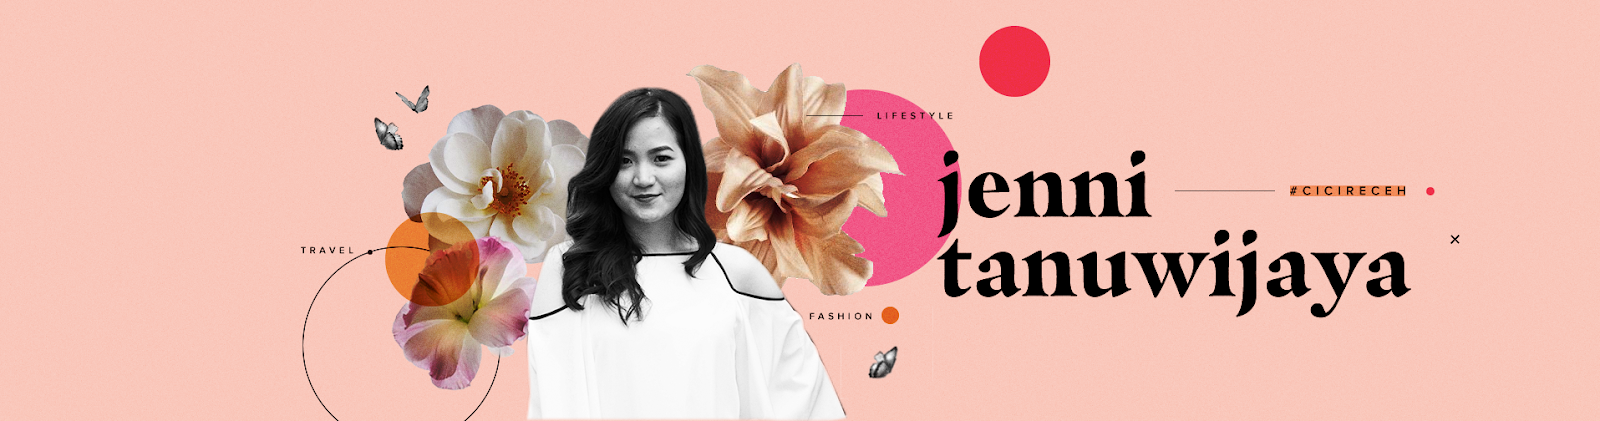 Jennitanuwijaya Beauty| Fashion | Lifestyle Blog